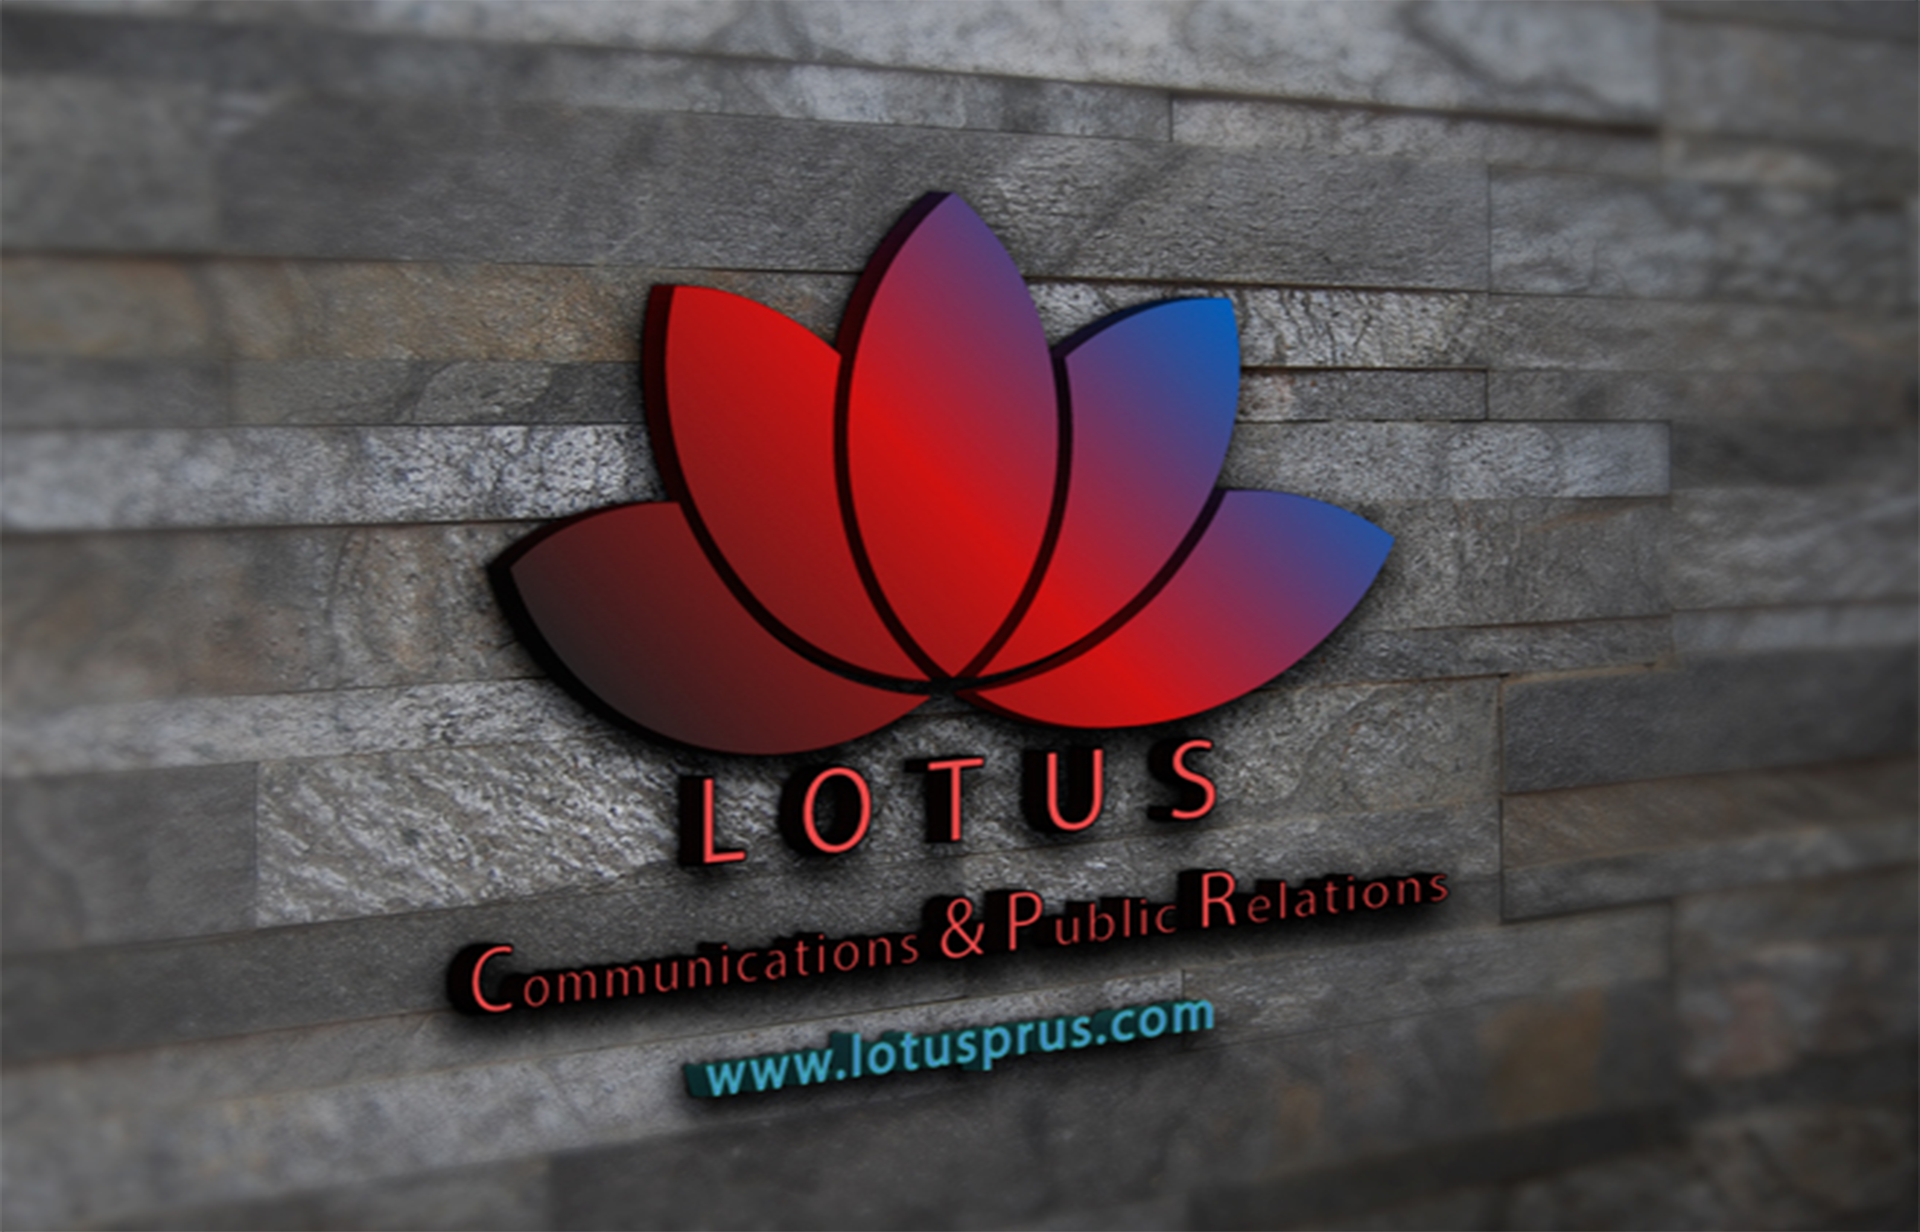 Lotus Facebook image